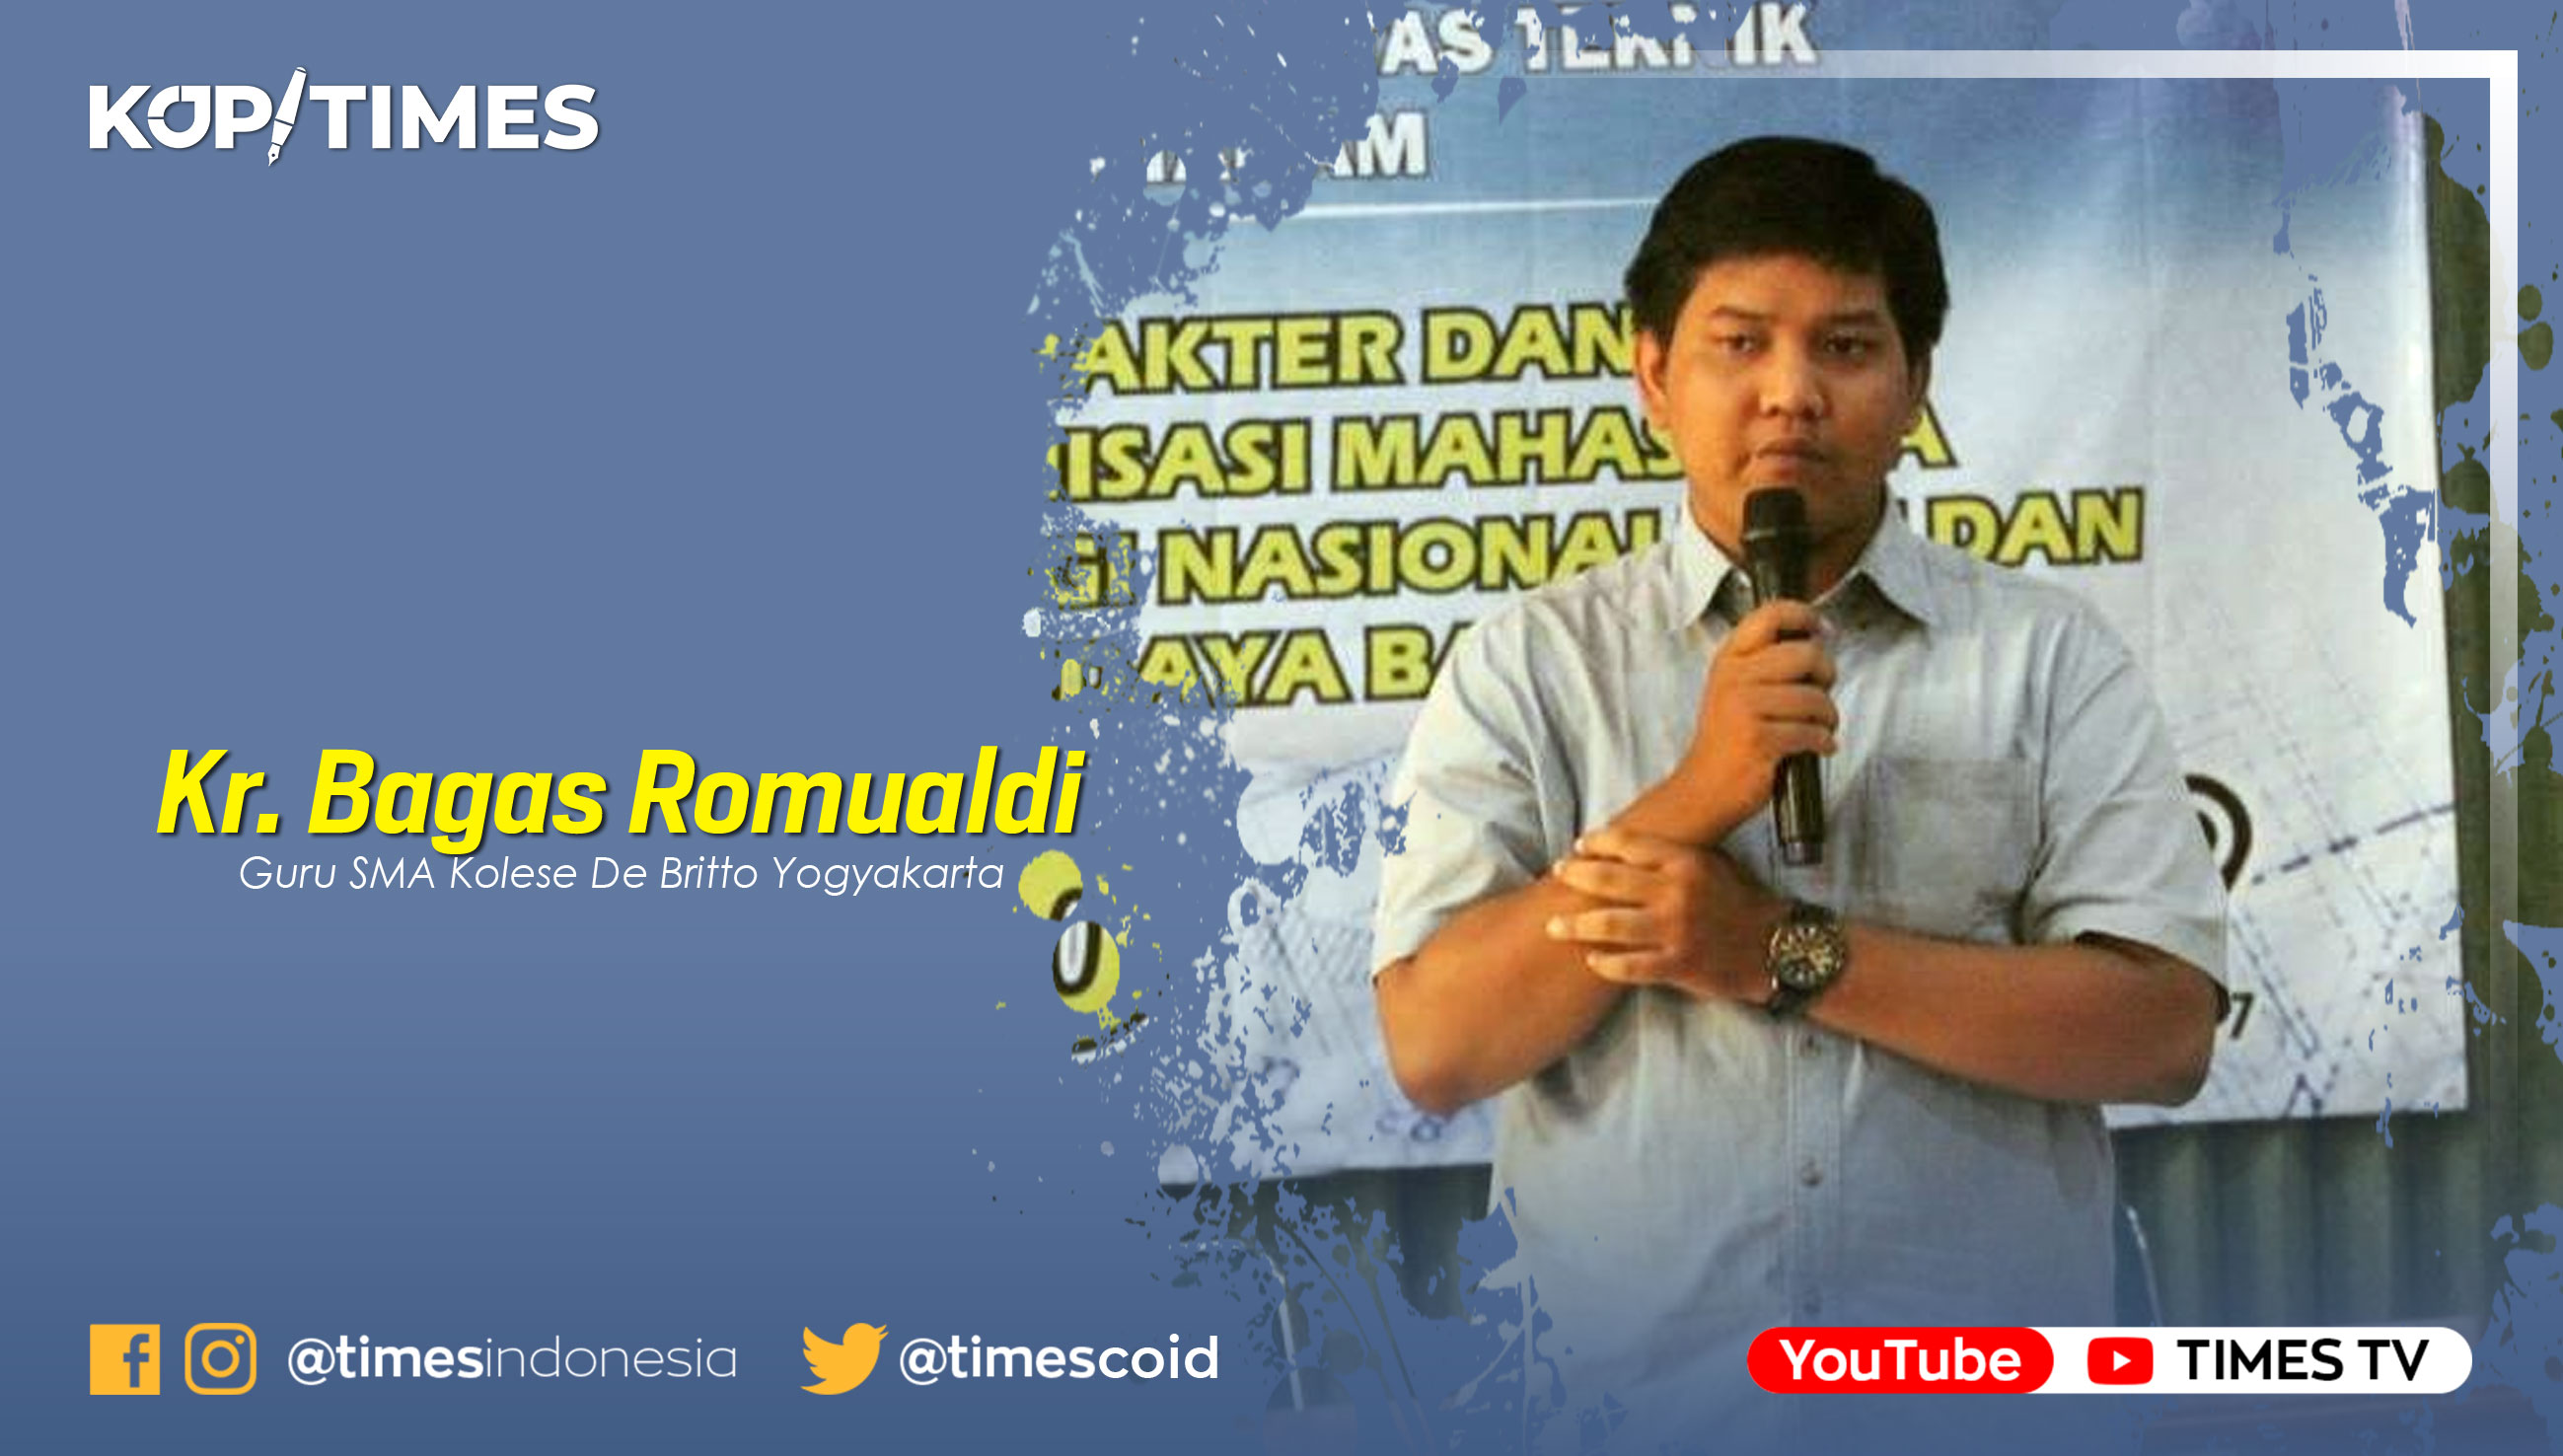 Kr. Bagas Romualdi, S.Pd, Guru SMA De Britto. Pegiat Gerakan Digital Jangkar Nusantara.